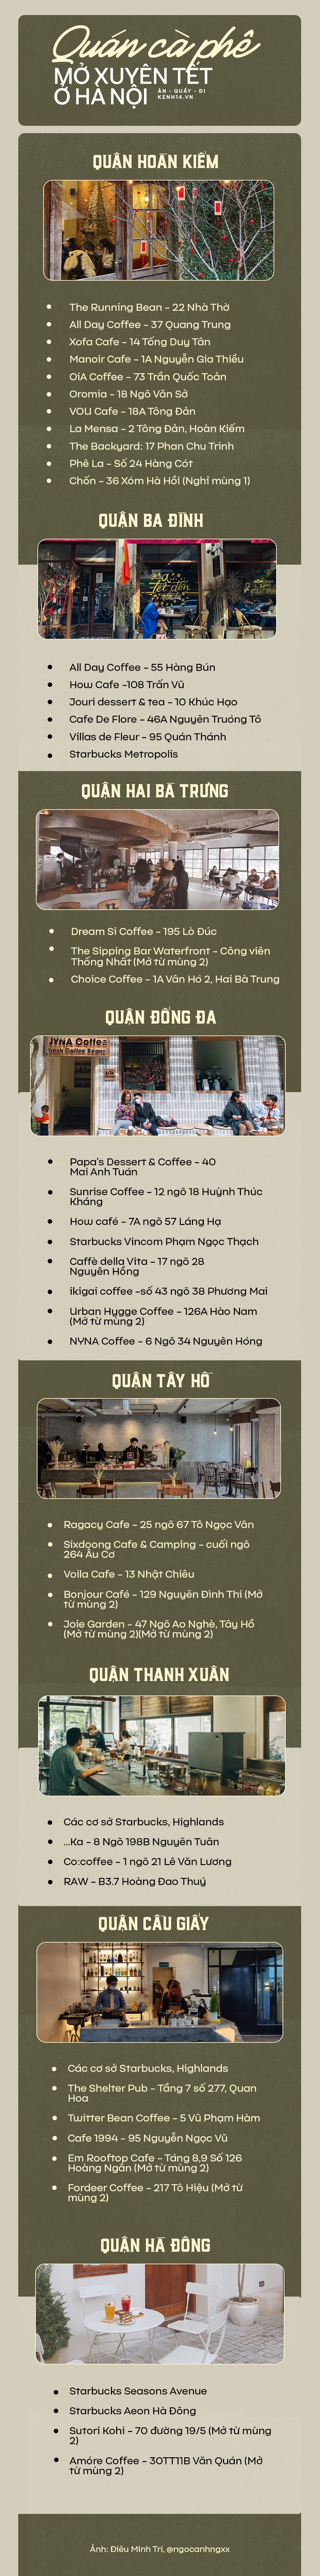 Loạt quán cà phê mở xuyên Tết ở Hà Nội khắp các quận, khỏi lo thiếu địa điểm hẹn hò đầu năm! - Ảnh 1.